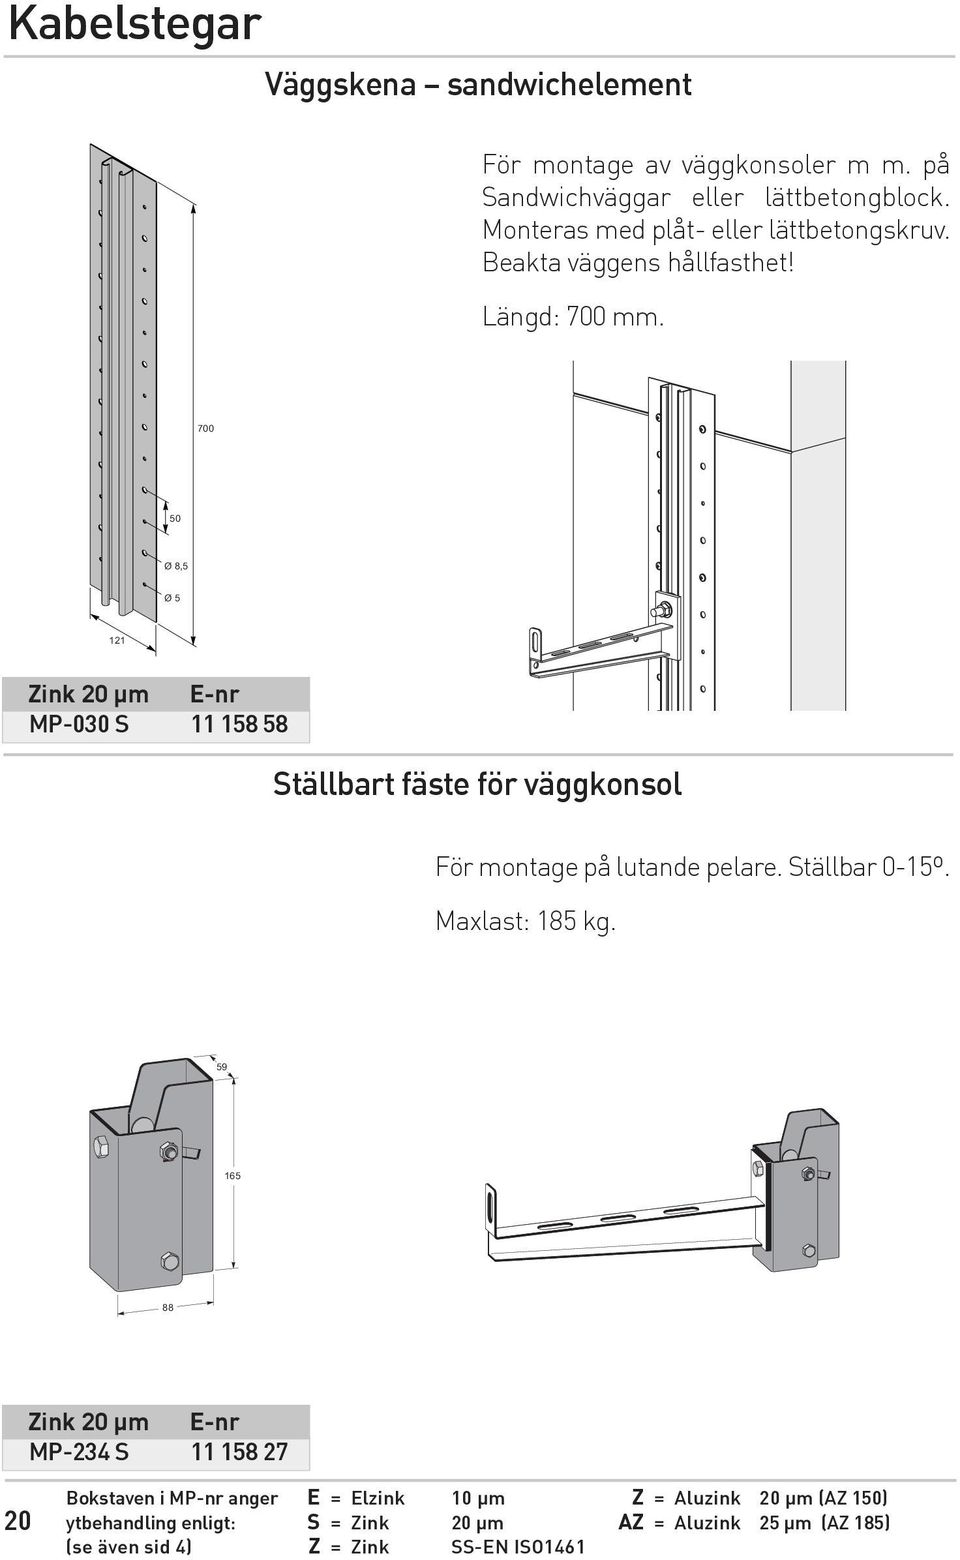 700 50 Ø 8,5 Ø 5 121 Zink 20 µm E-nr MP-030 S 11 158 58 Ställbart fäste för väggkonsol För montage på lutande pelare. Ställbar 0-15º.